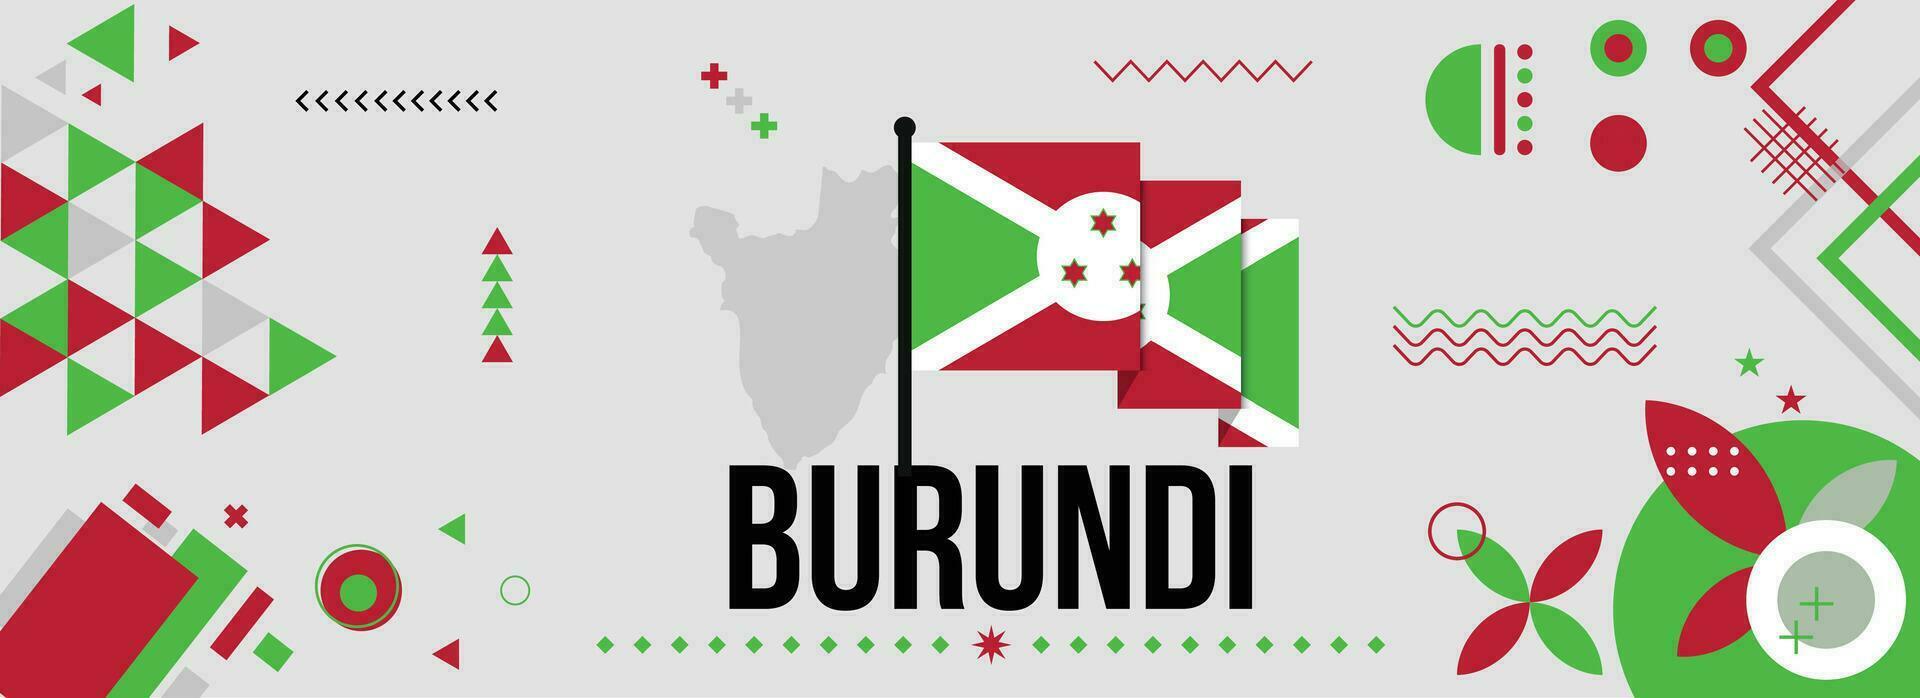 burundi nationale ou indépendance journée bannière pour pays fête. drapeau et carte de burundi avec élevé poings. moderne rétro conception avec typorgaphie abstrait géométrique Icônes. vecteur illustration.